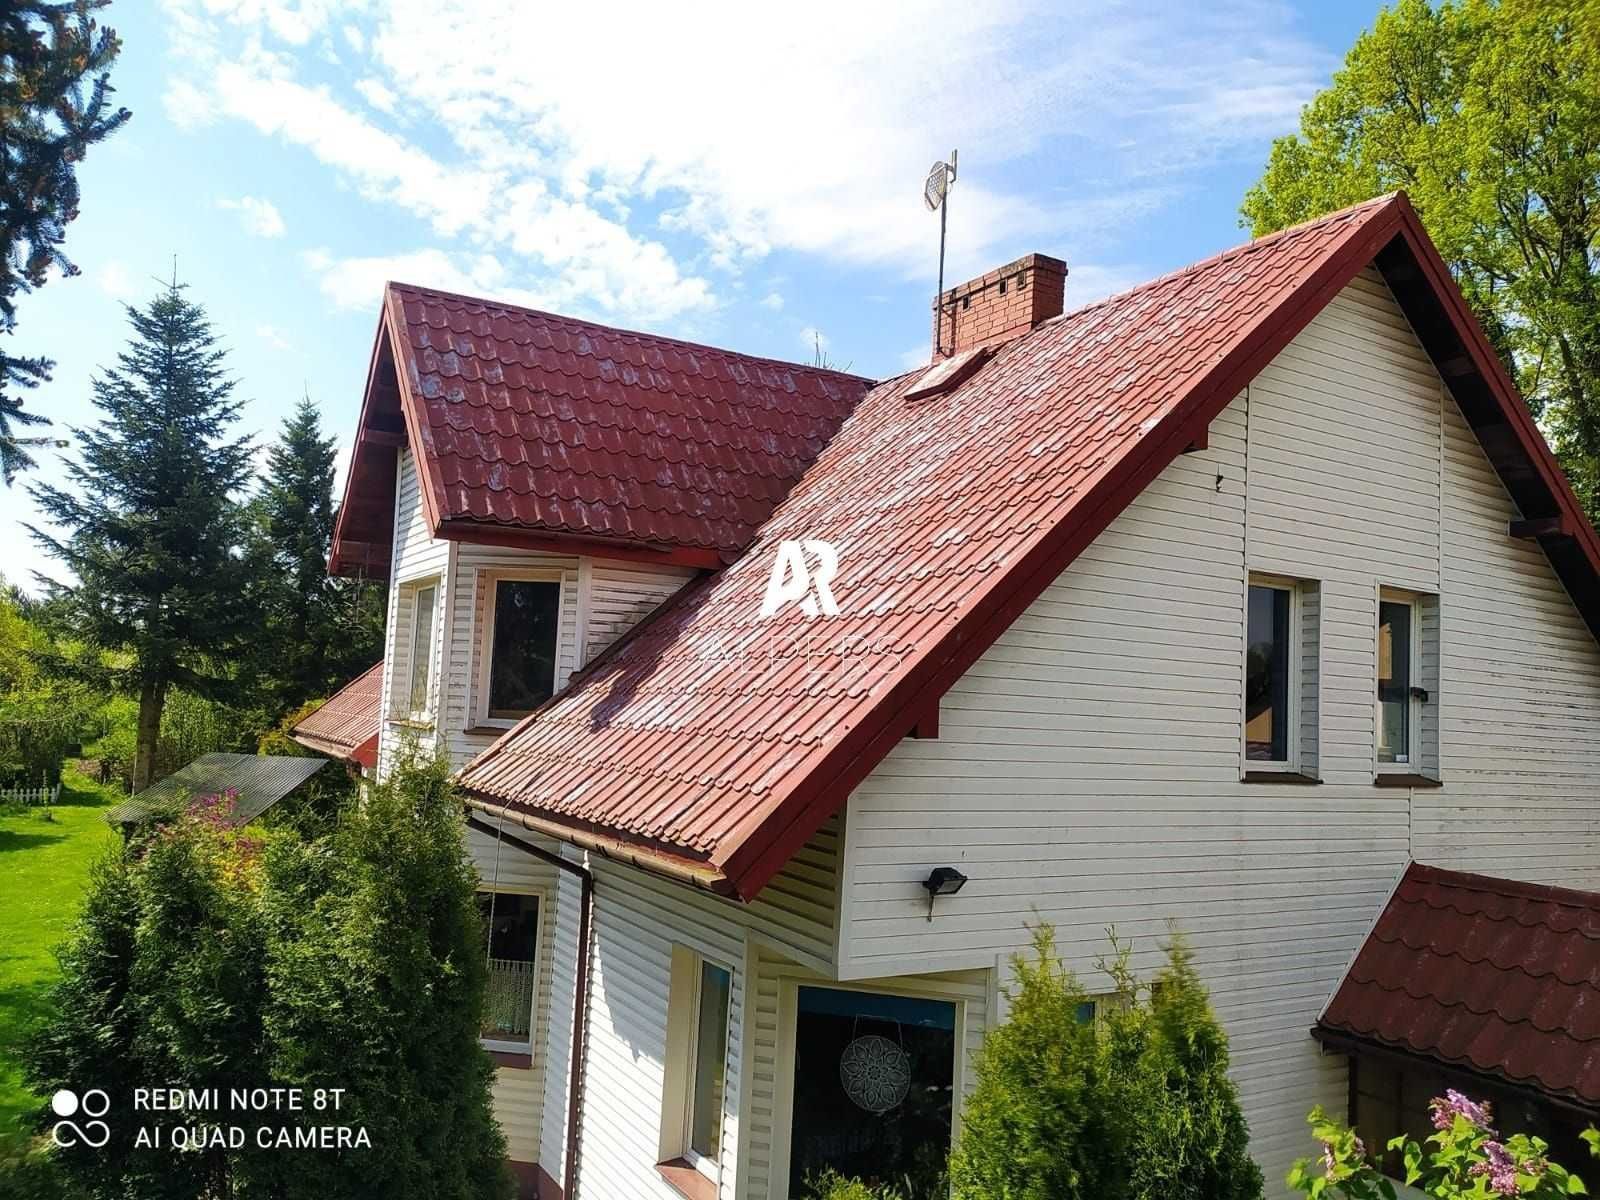 Mycie Malowanie Dachów Elewacji renowacja kostki brukowej dachówki